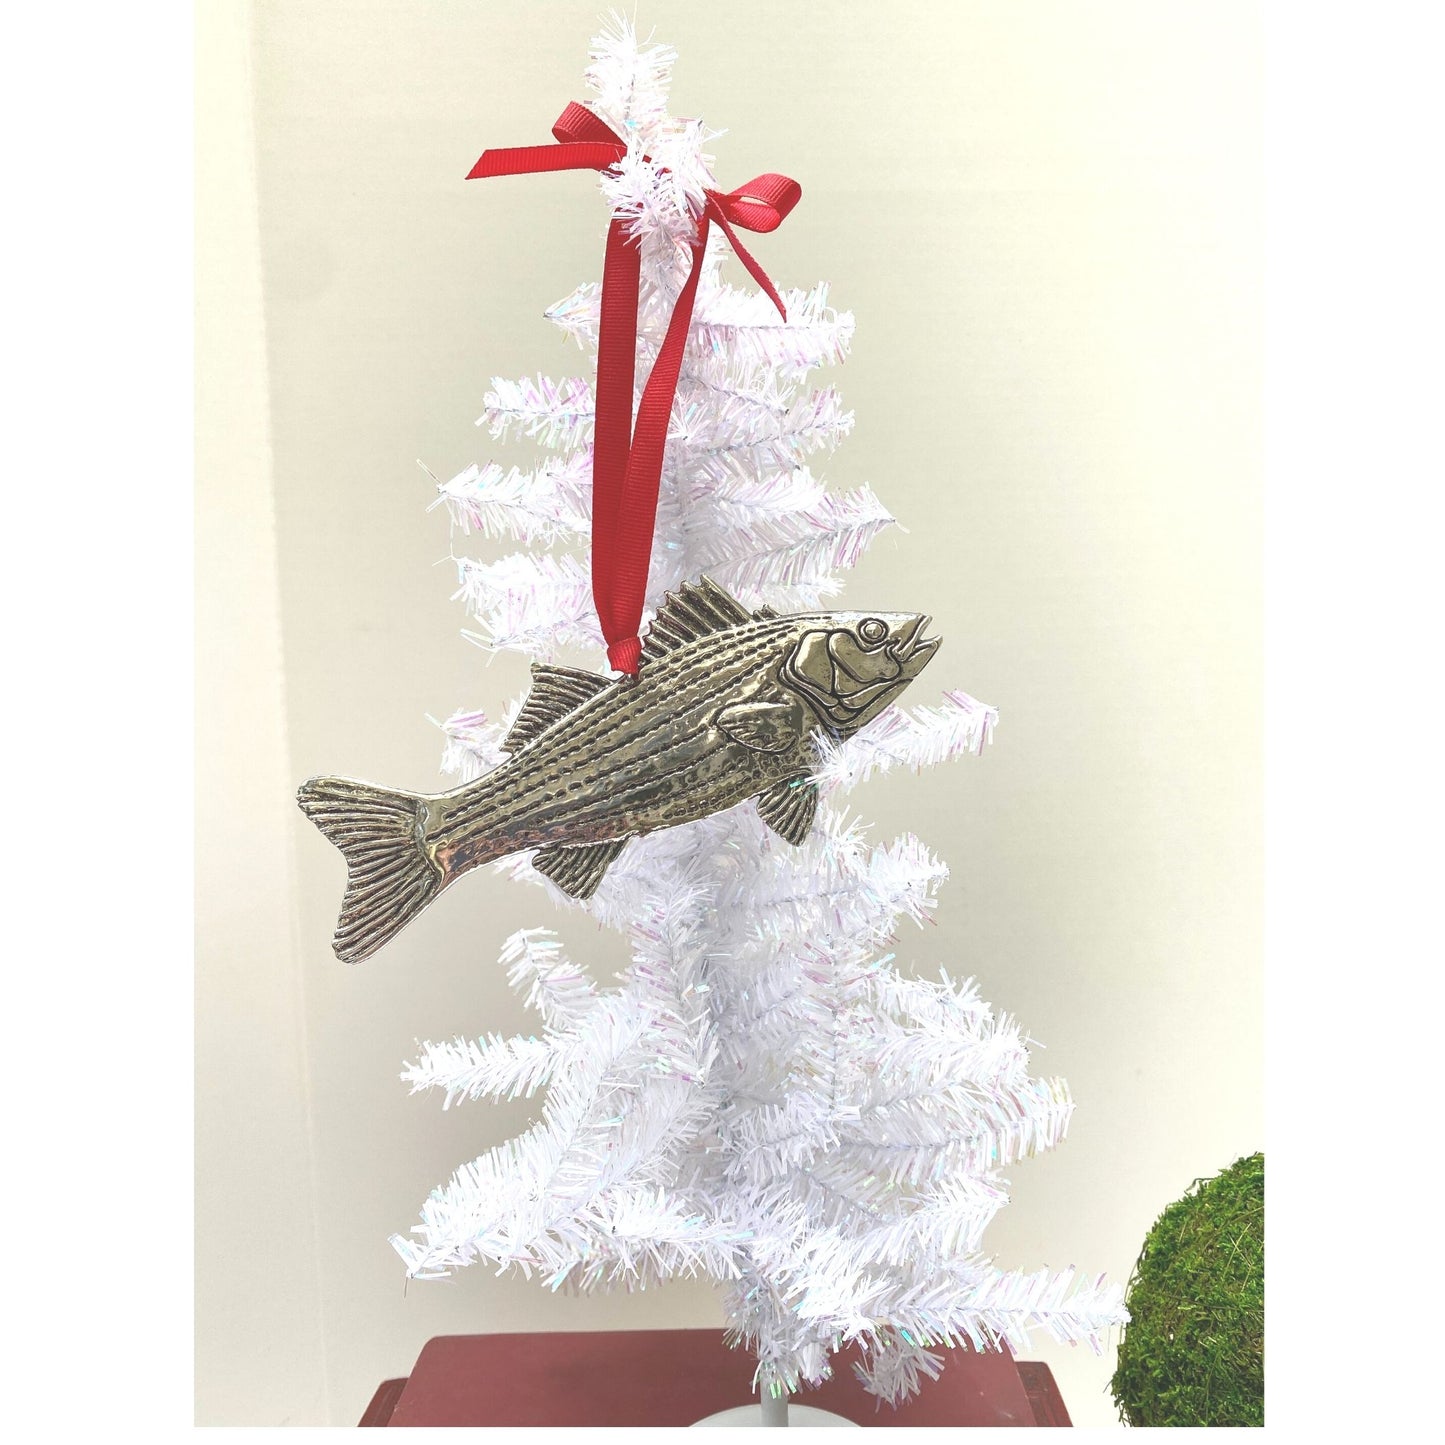 Silver Fish Christmas Ornament, Handmade, Fisherman Christmas Gift